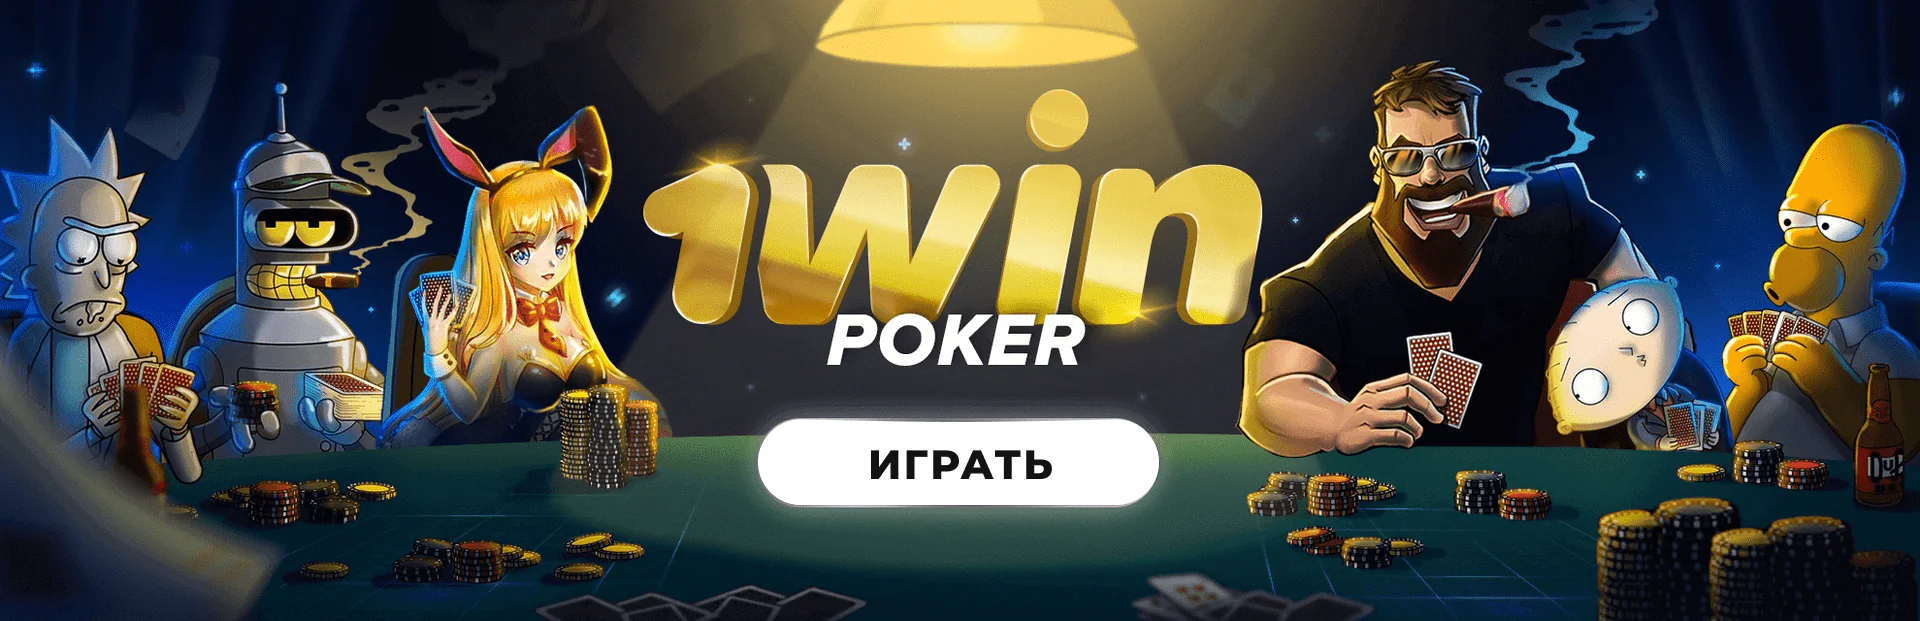 Ka Gaming производитель игр в казино 1вин Украина 🏆